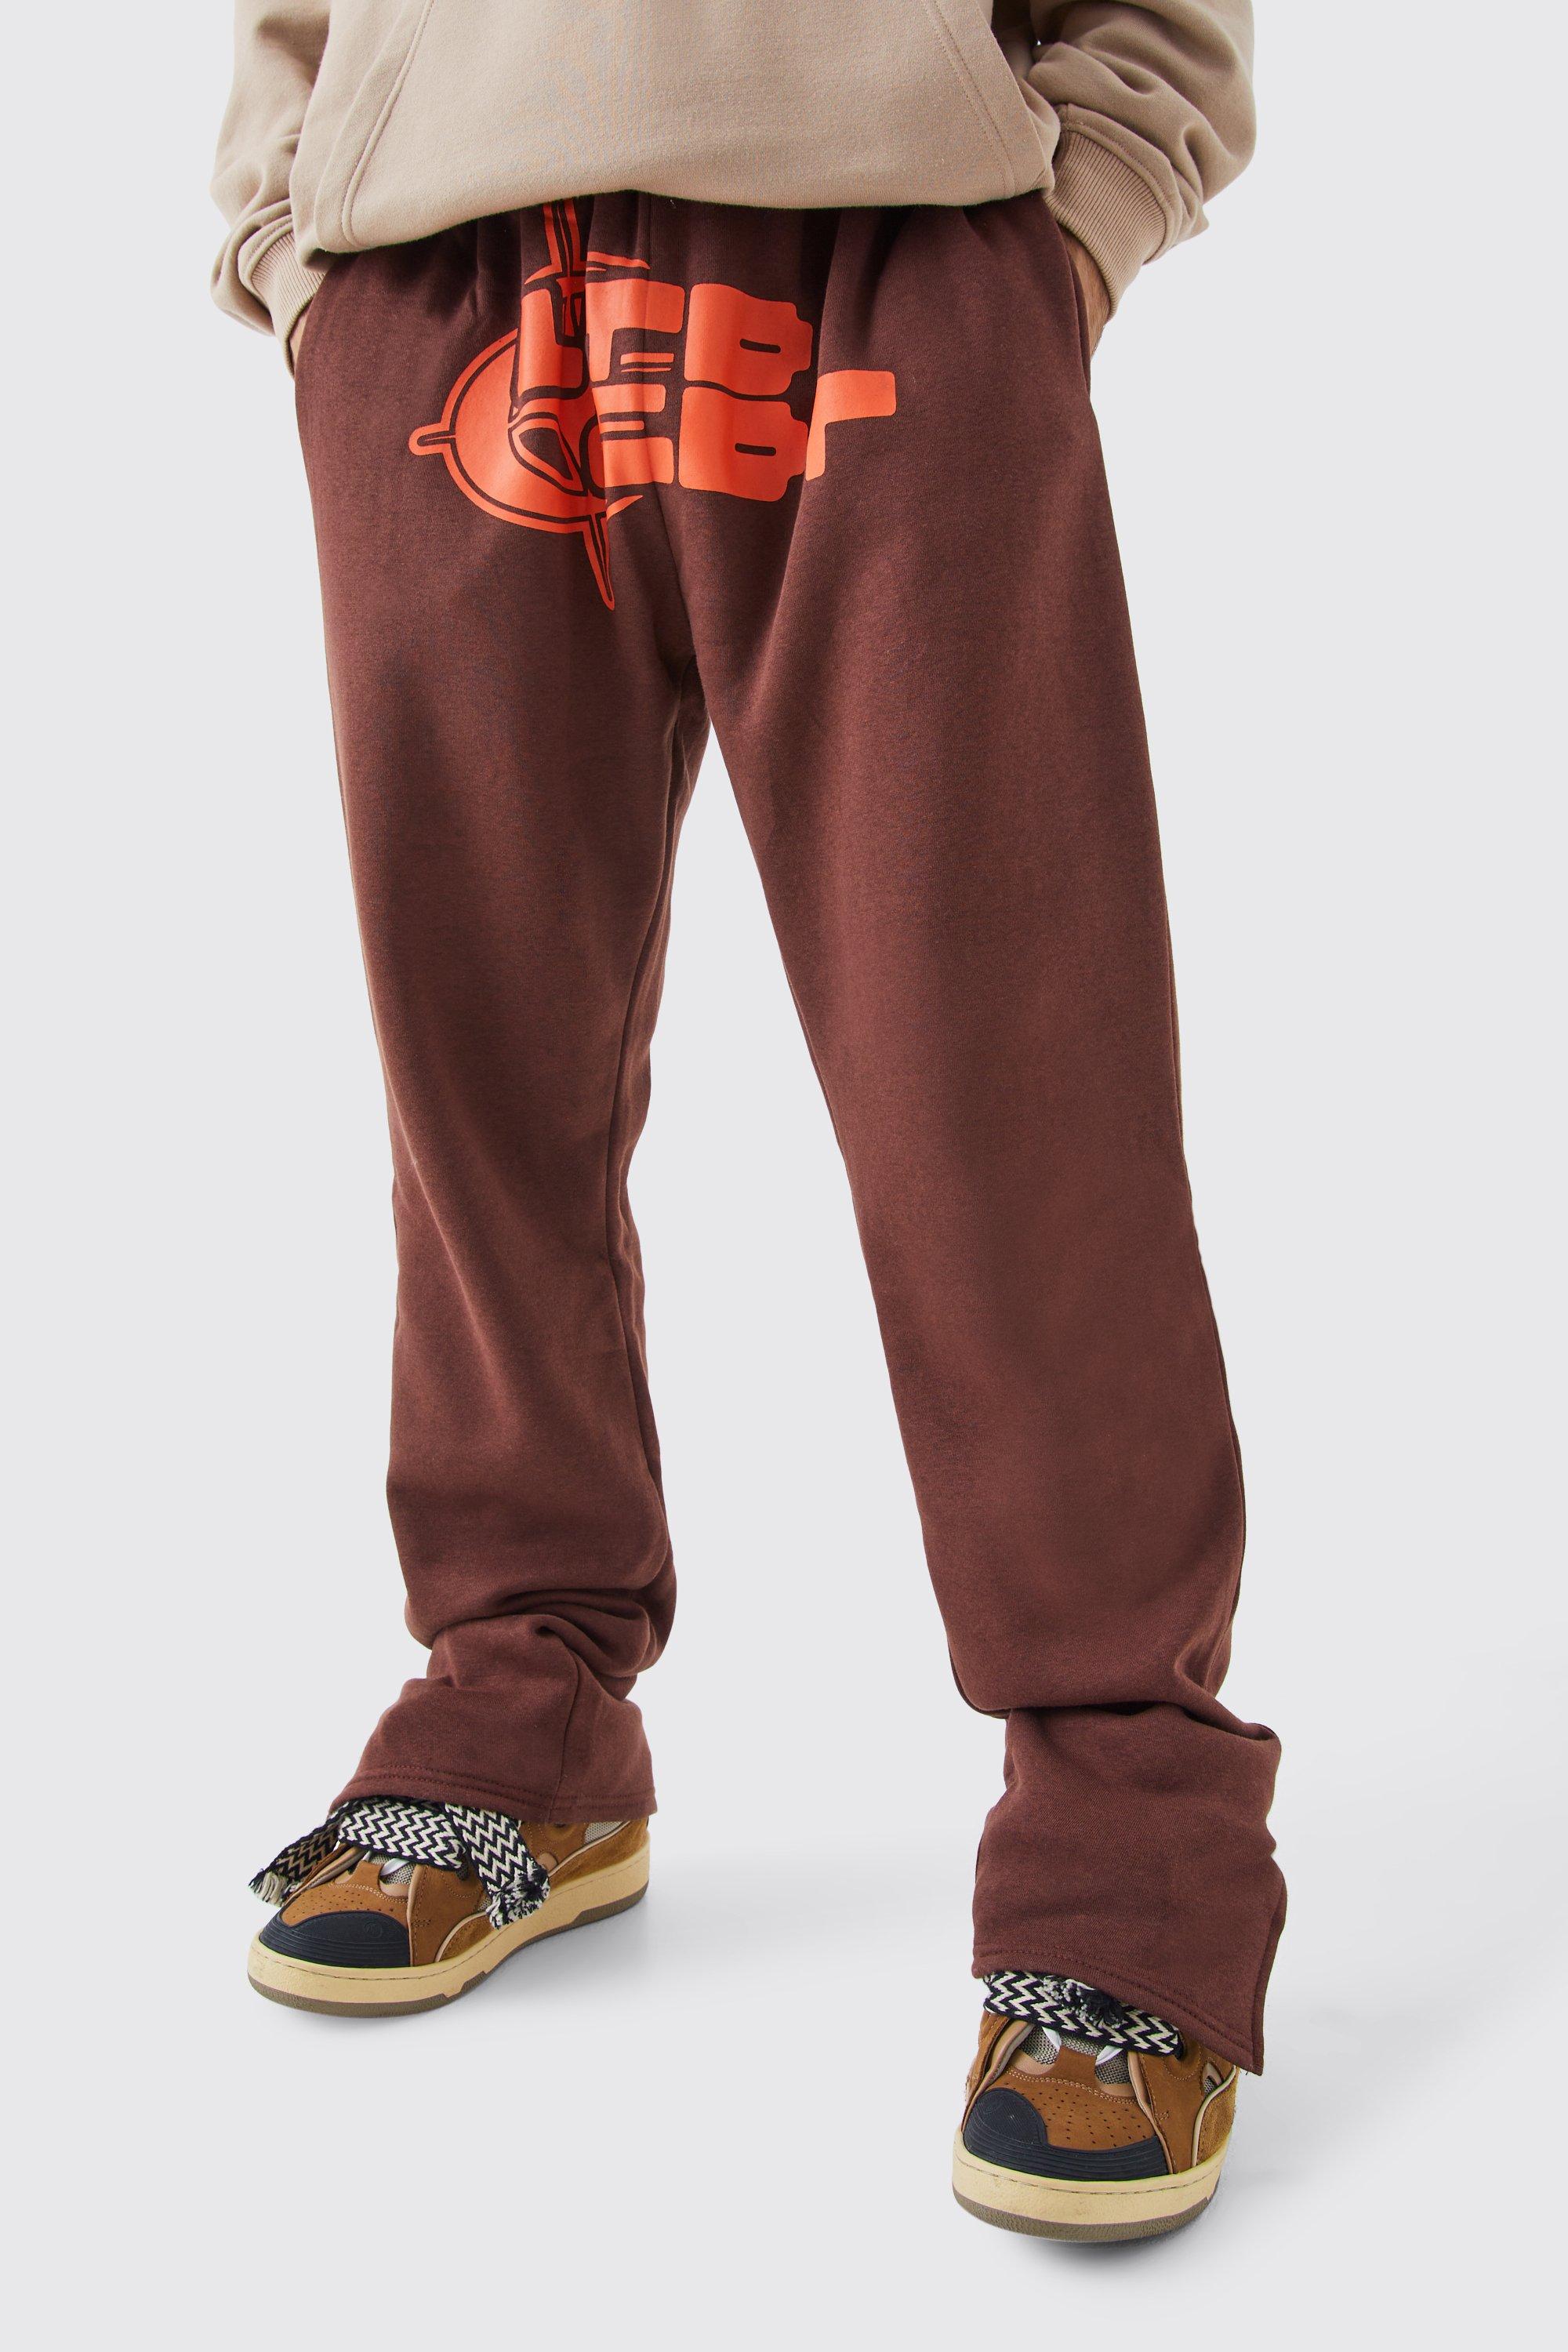 Image of Pantaloni tuta con grafica Target e spacco sul fondo, Brown